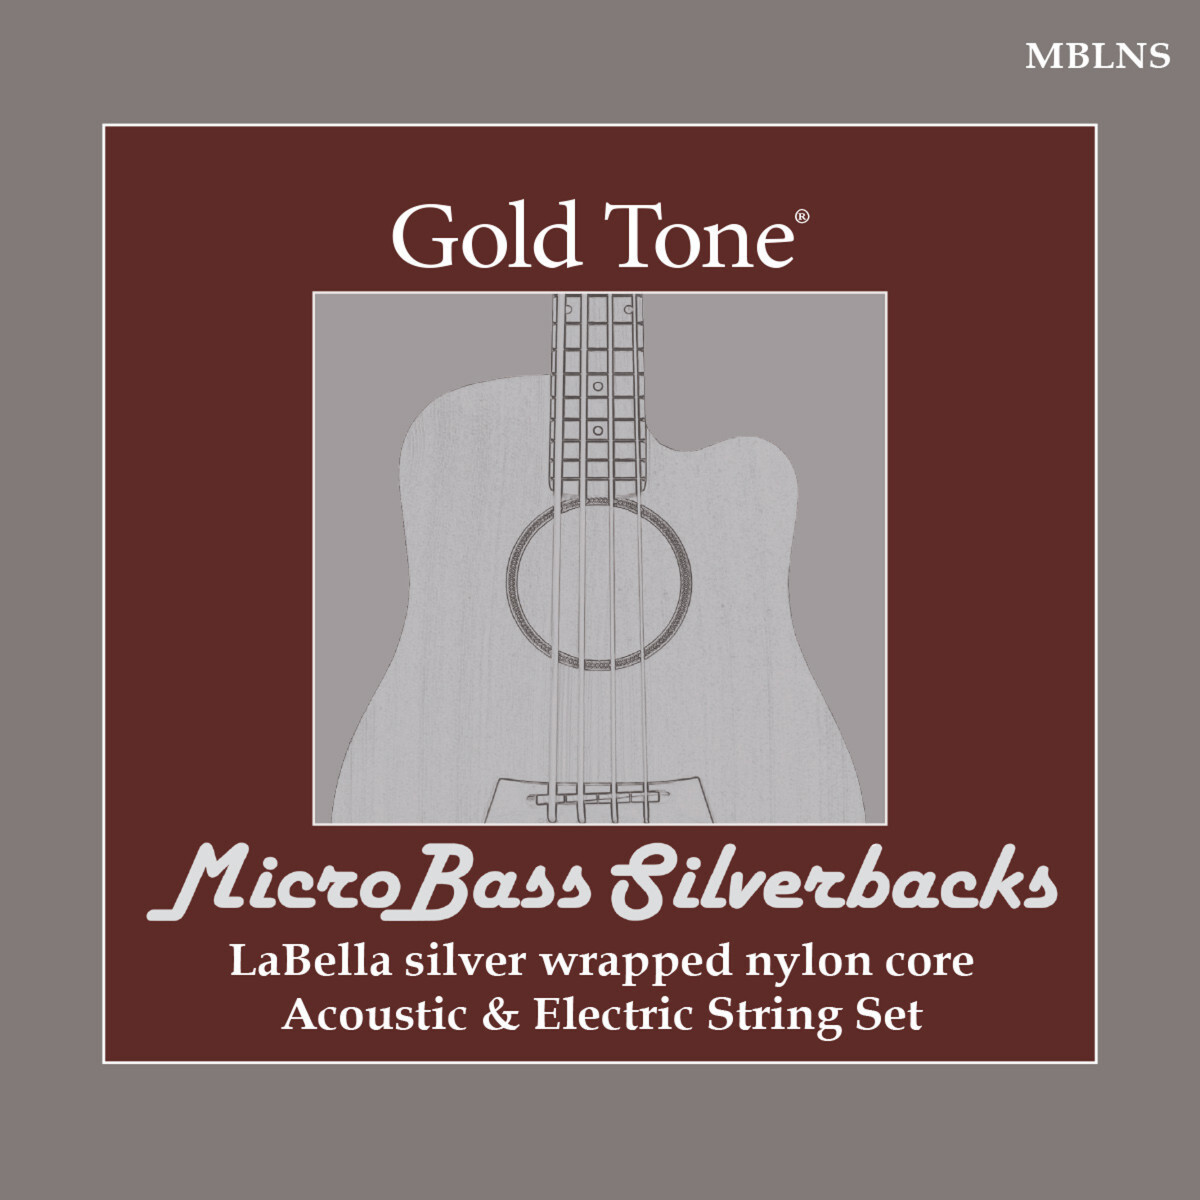 Gold Tone MBLNS Microbass Silverbacks